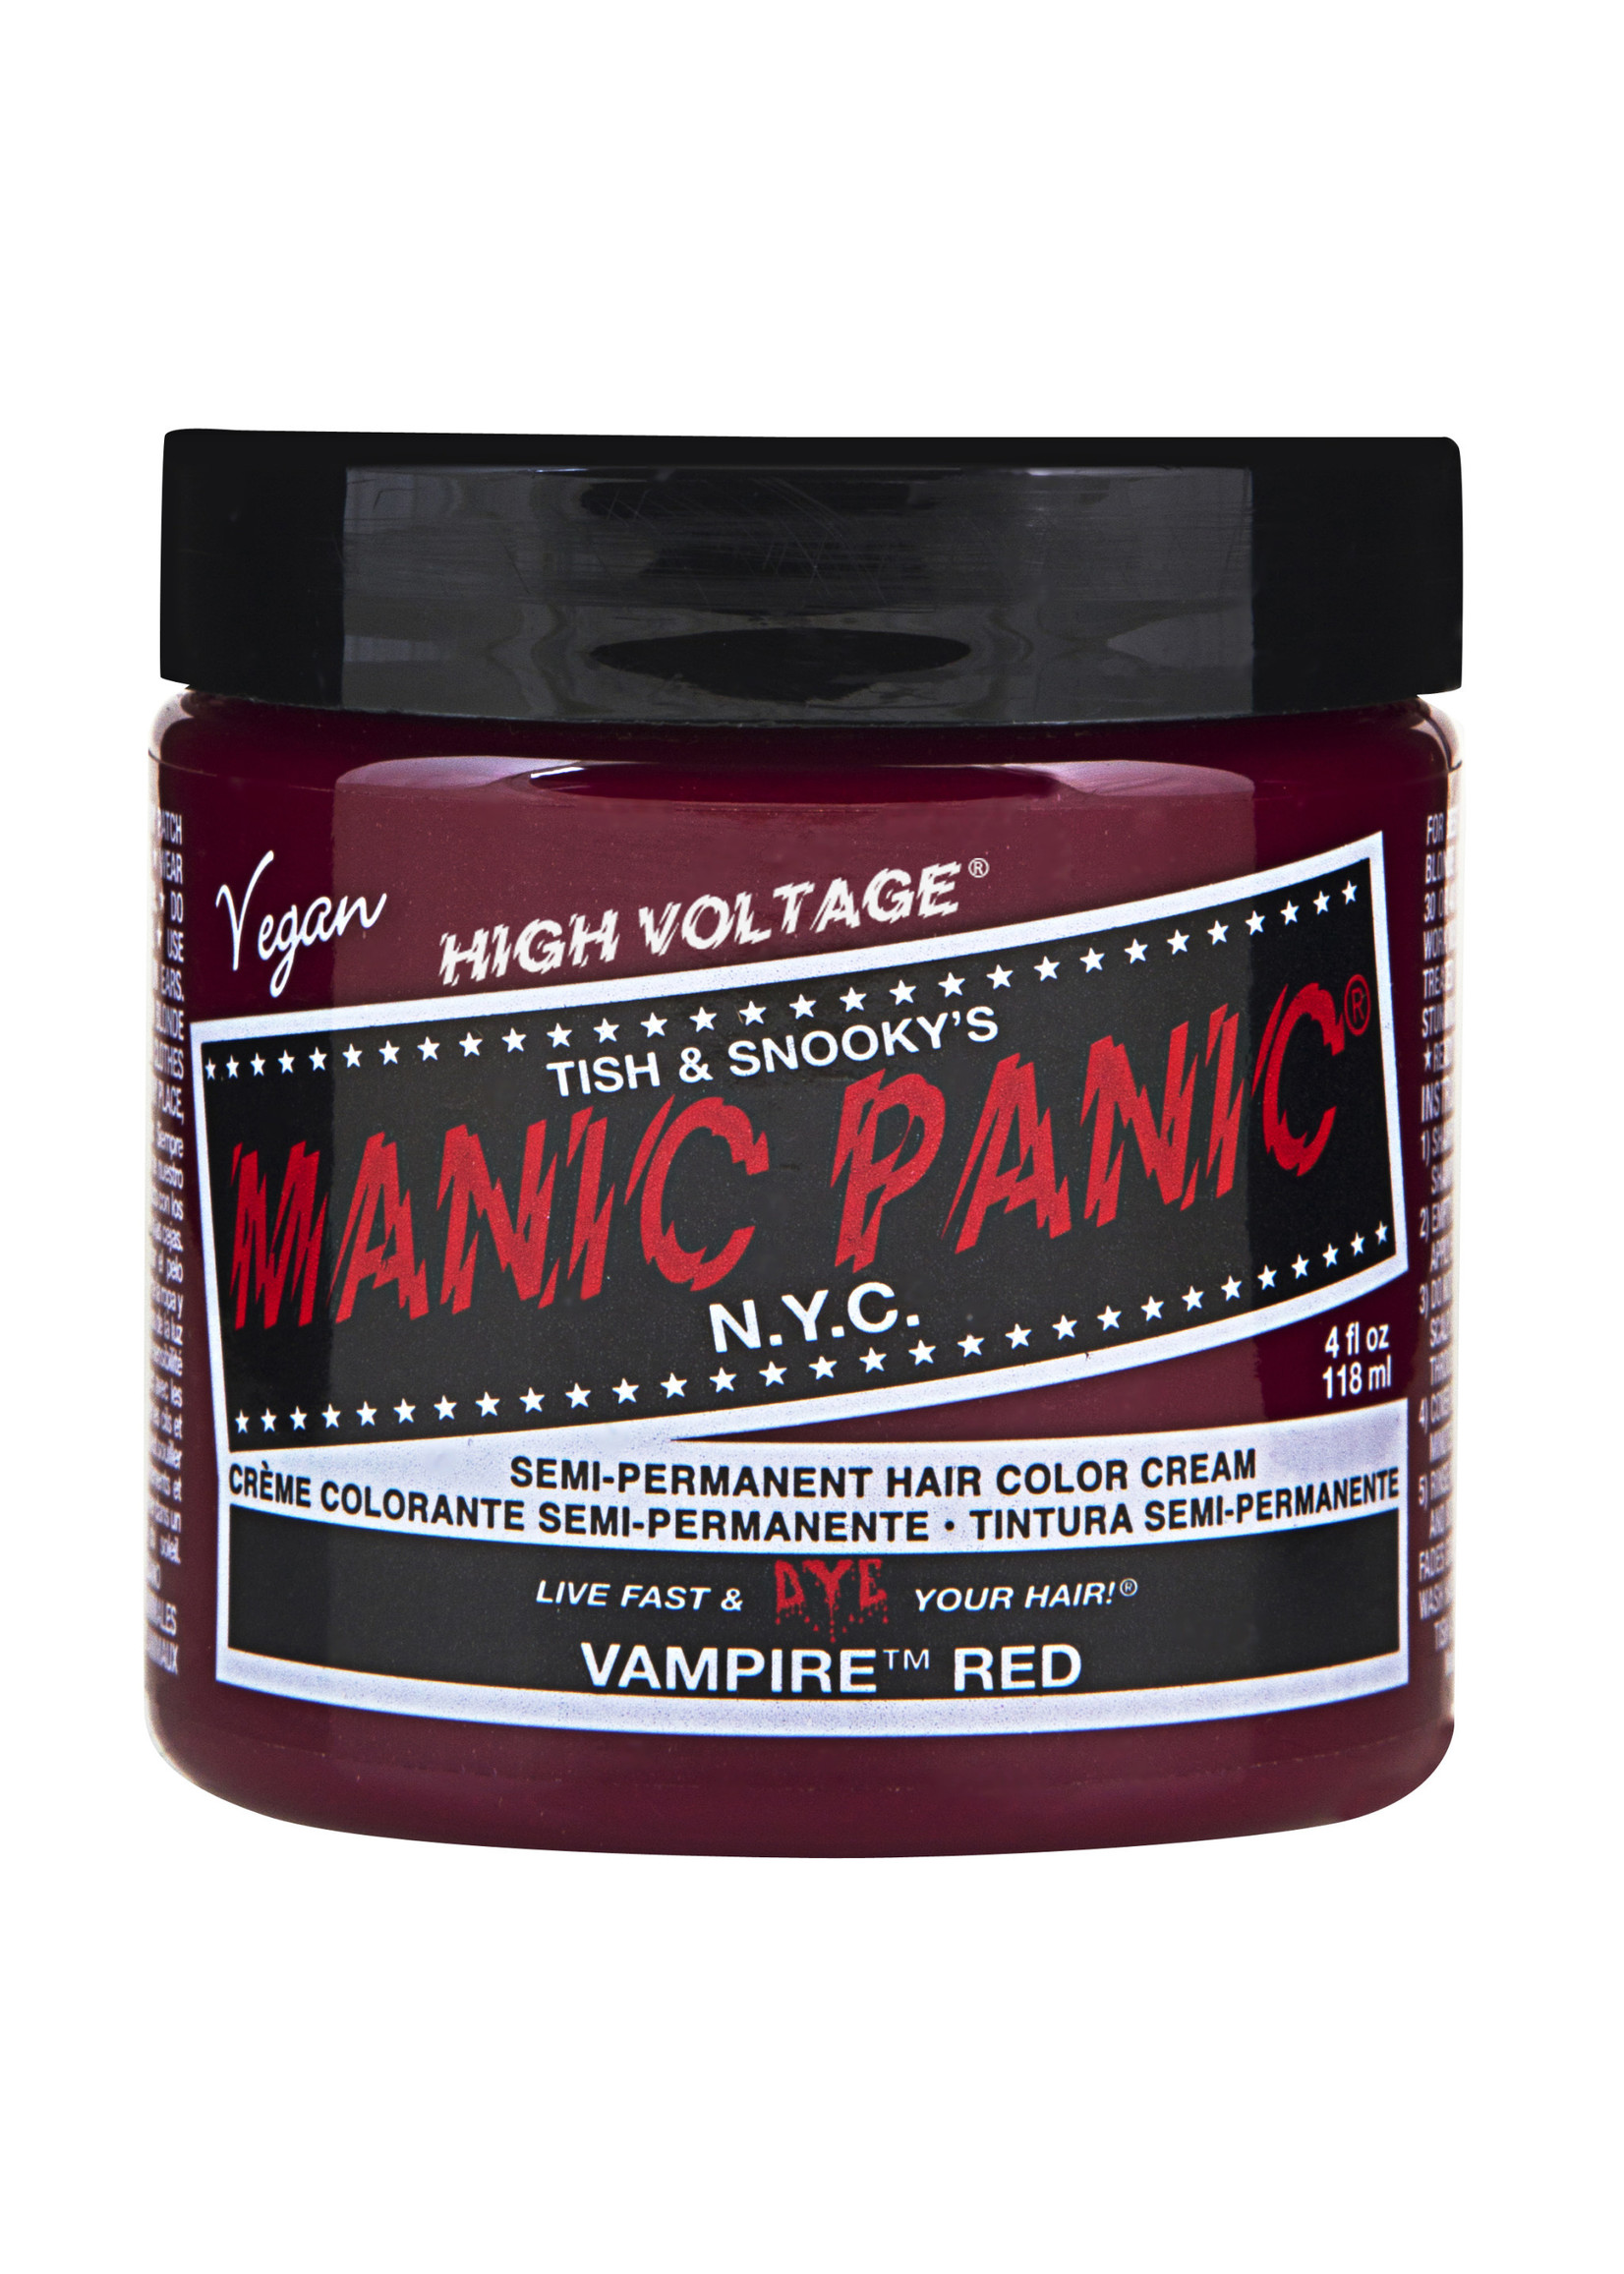 Manic Panic Manic Panic Classic Cream Vampire Red 118mL